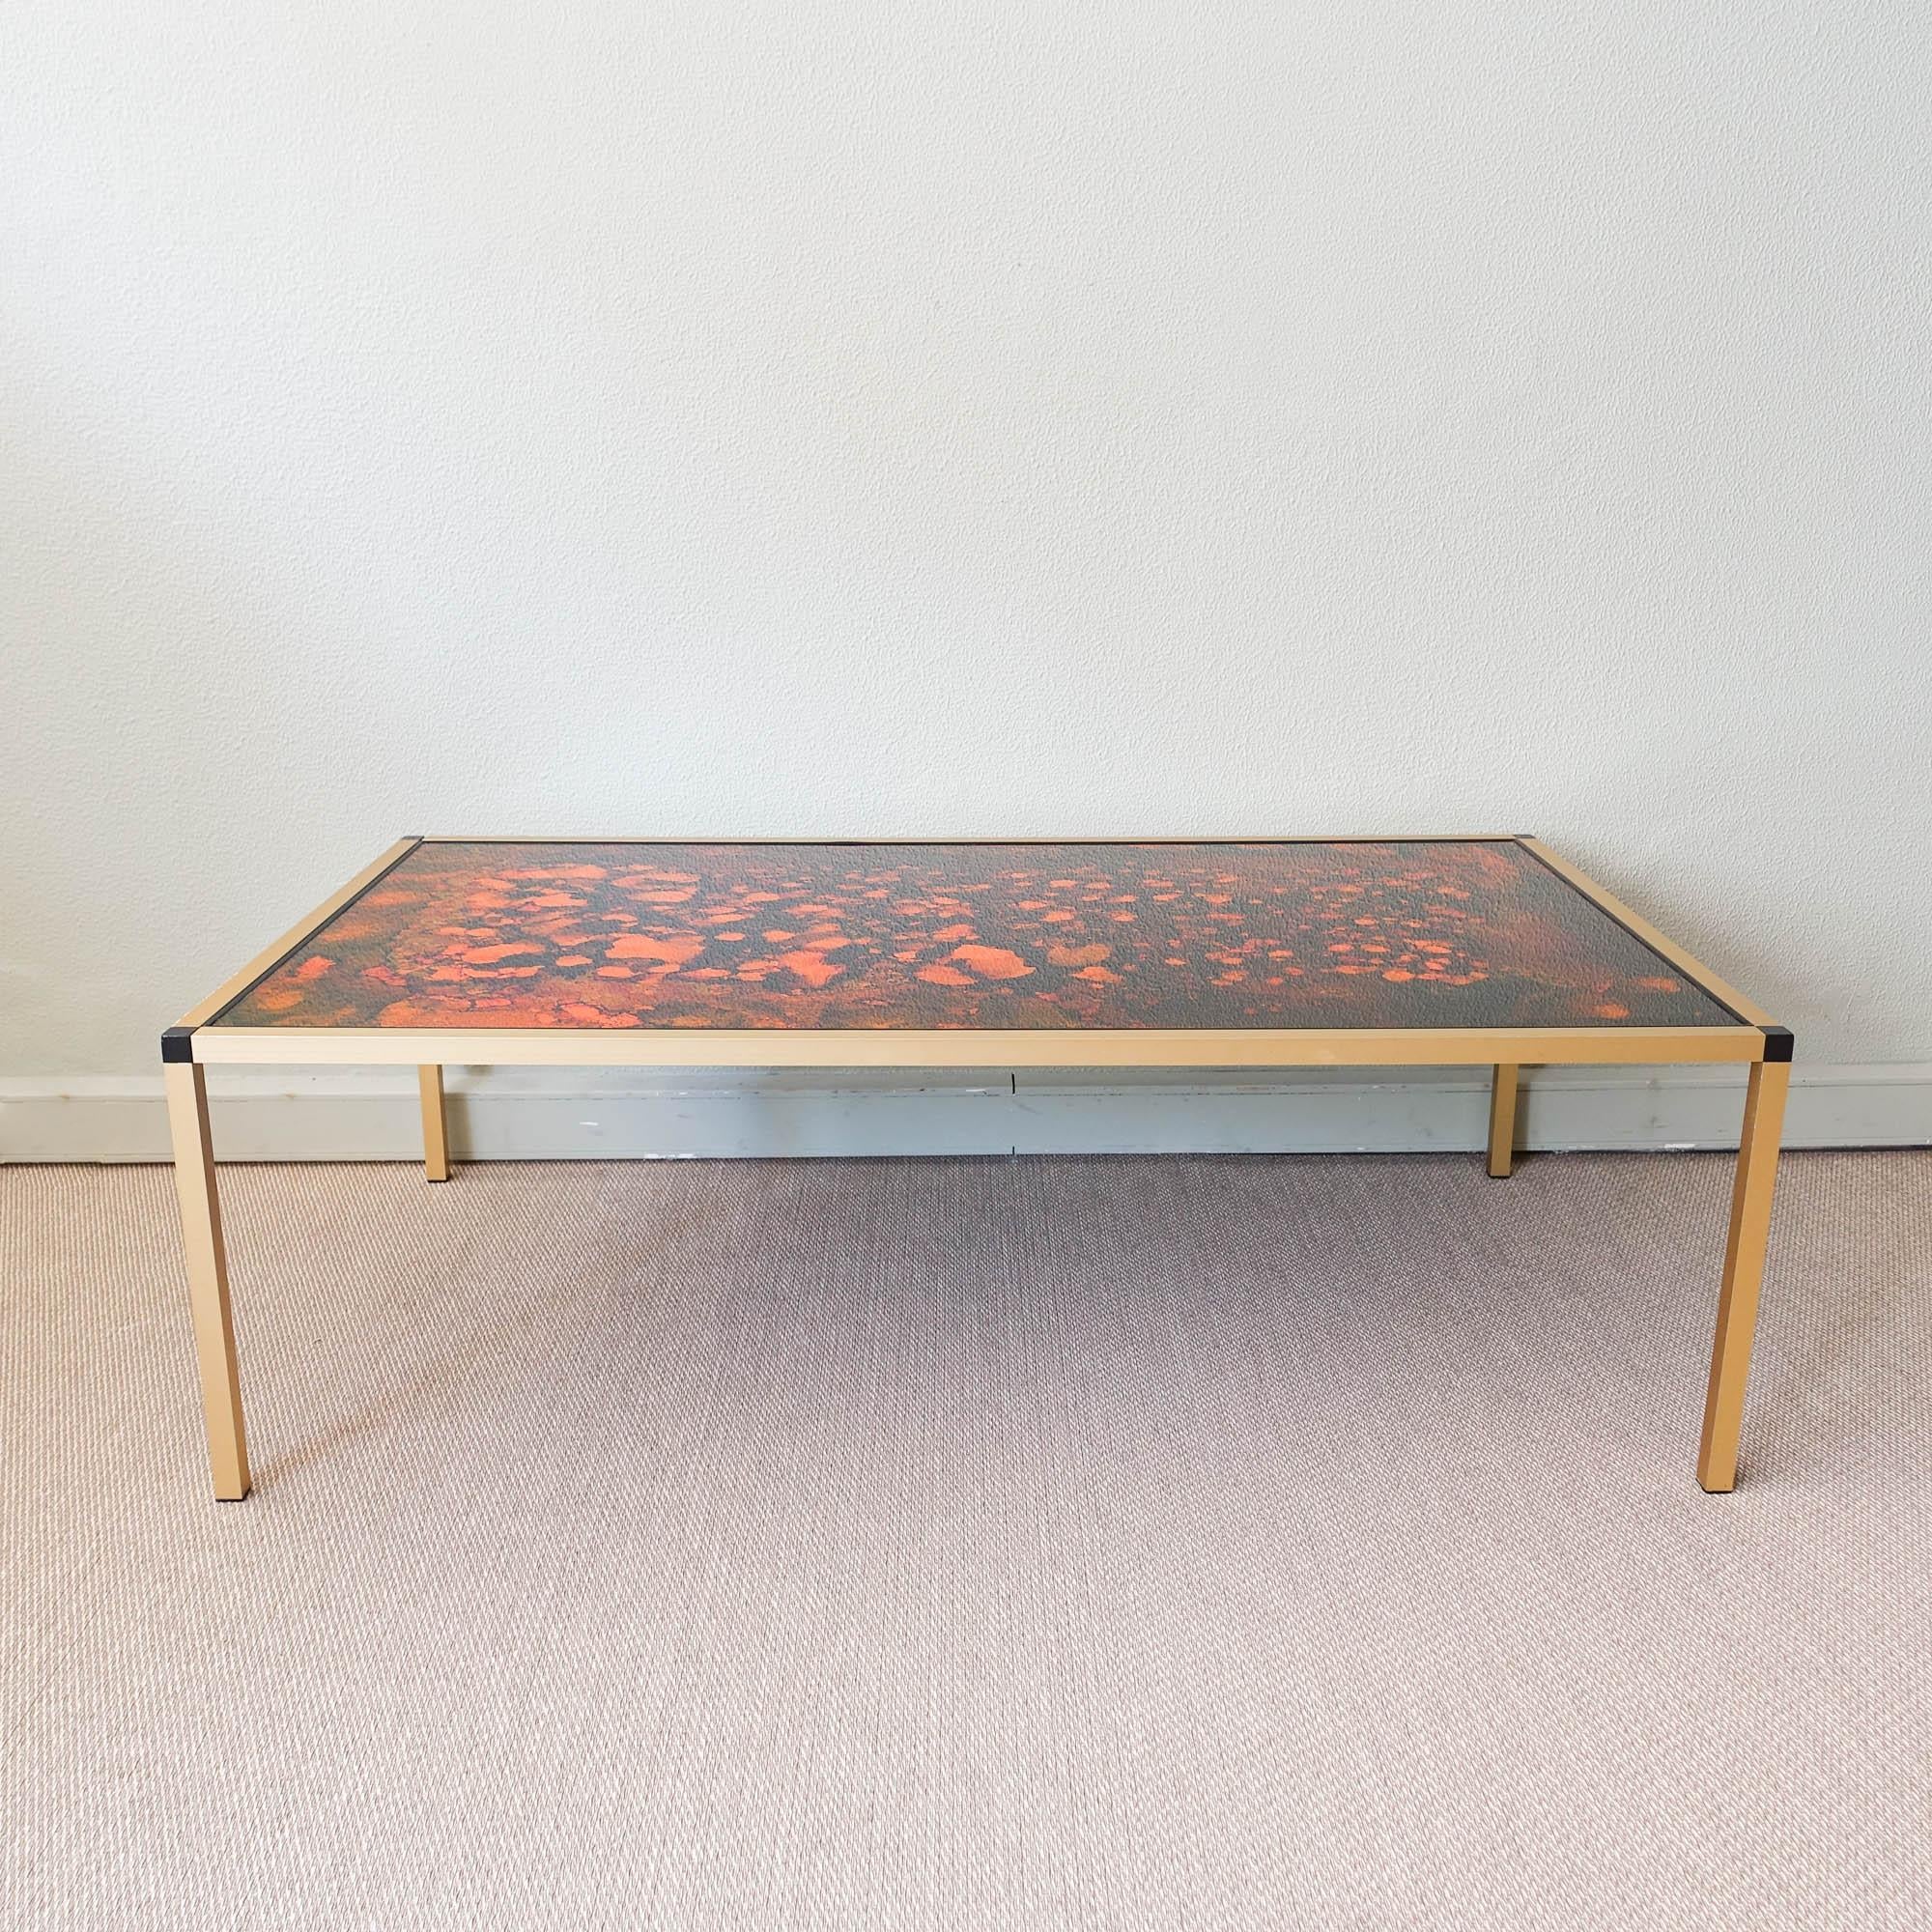 Bringen Sie eine einzigartige und stilvolle Ergänzung in Ihr Wohnzimmer mit diesem atemberaubenden Couchtisch mit dänischem Lava-Muster aus den 1970er Jahren. Der in Dänemark gefertigte Tisch hat einen goldenen Aluminiumrahmen und schwarze Füße, die